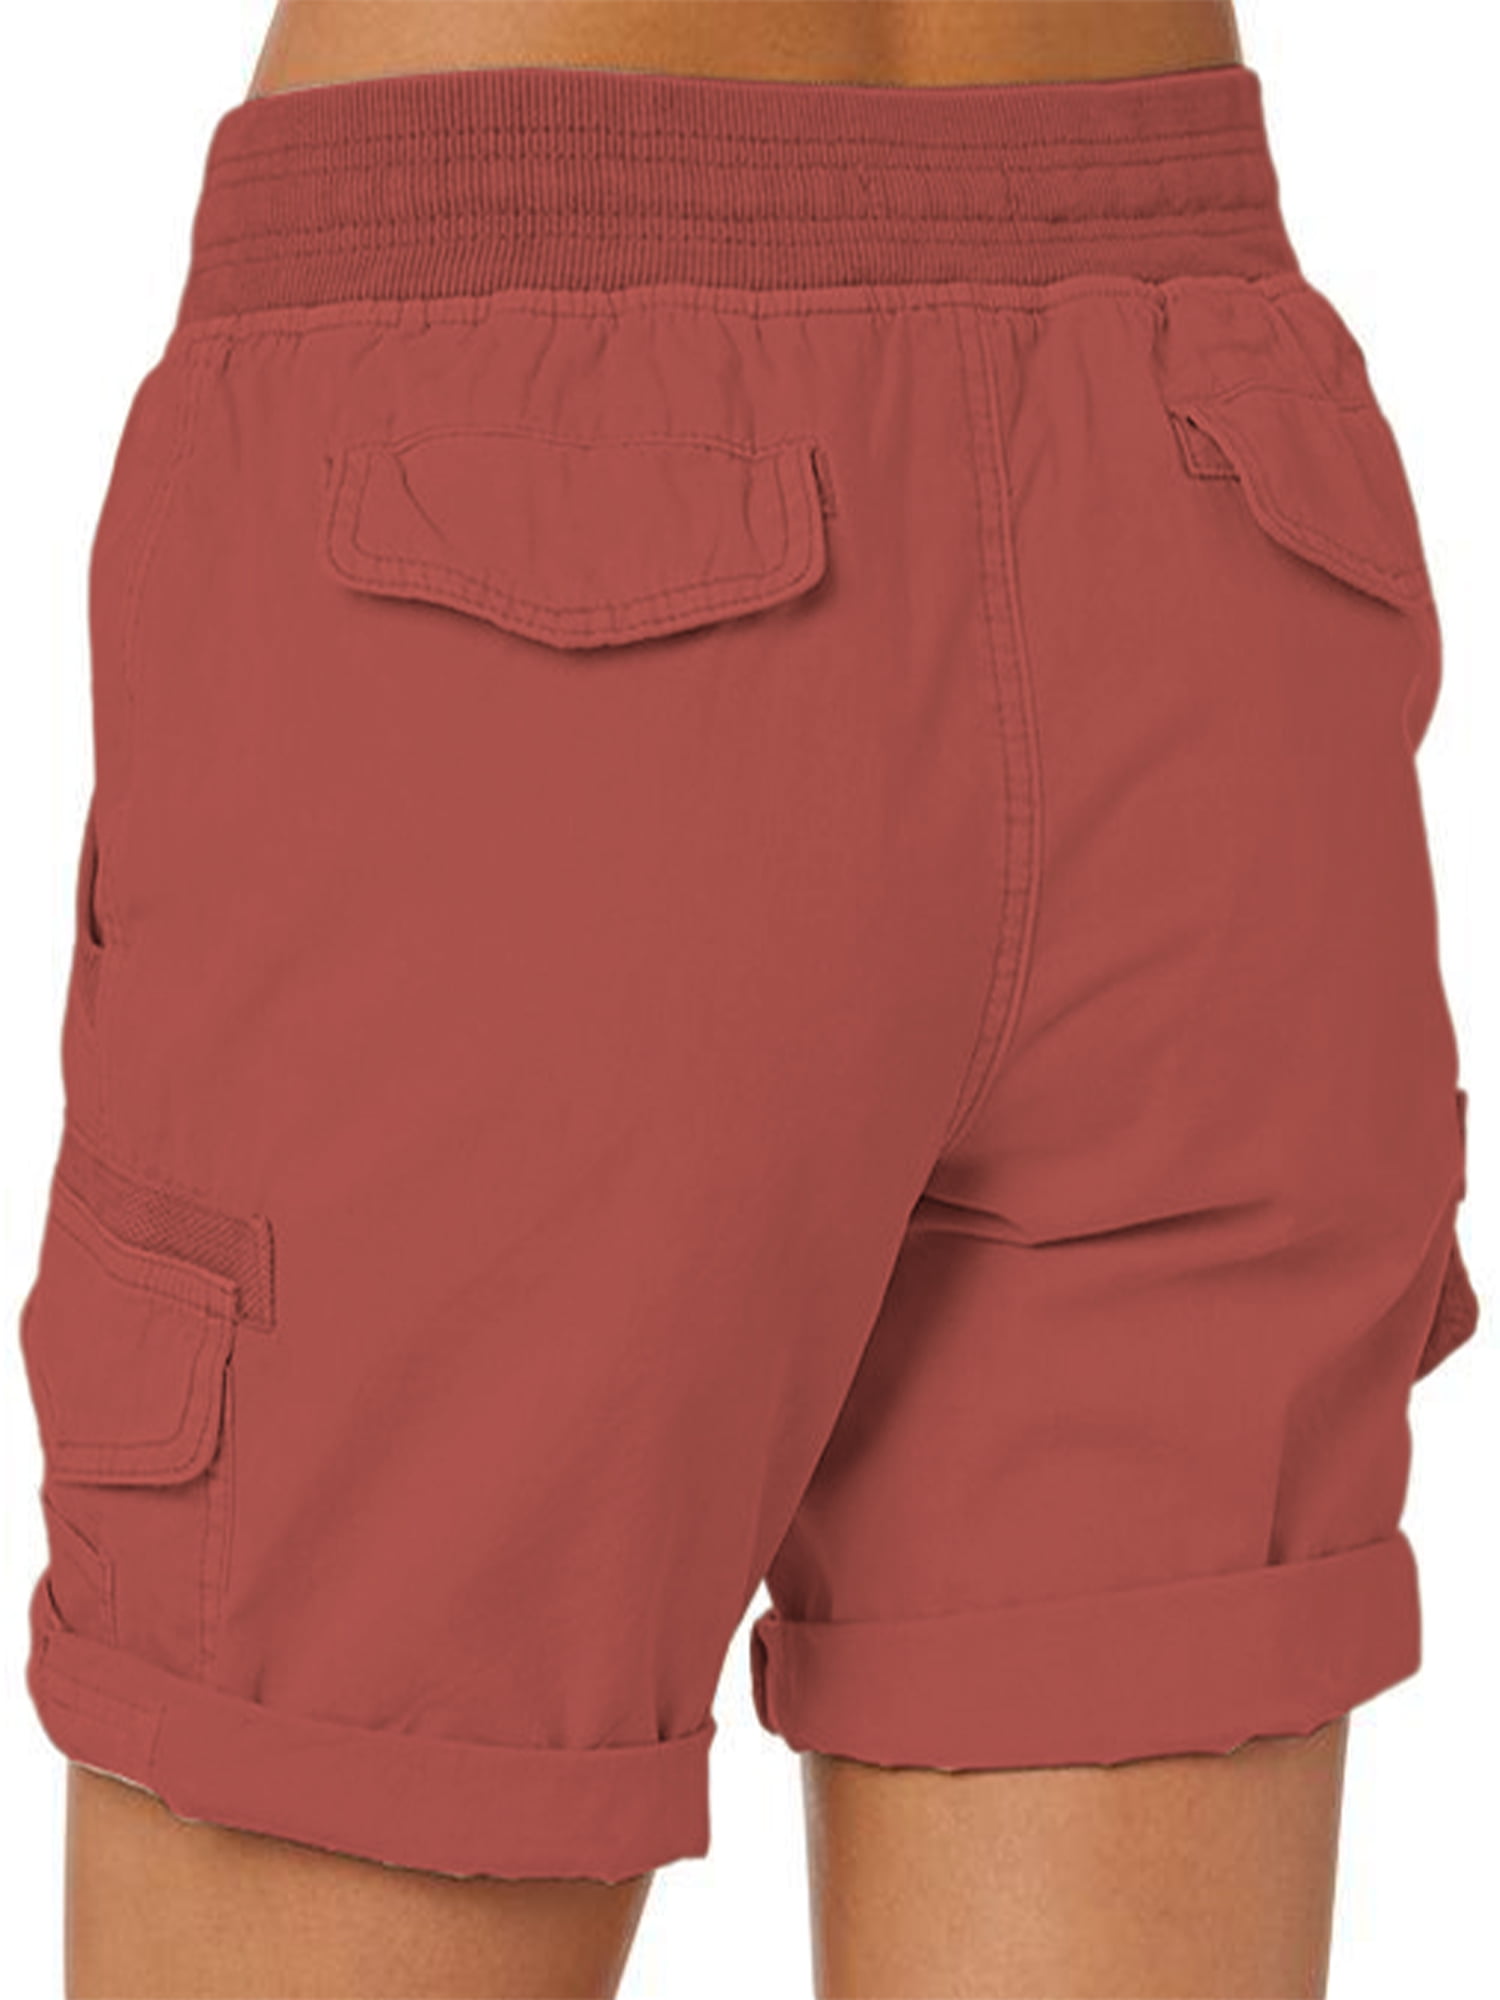 Frontwalk Cotton Linen Beach Shorts for Women High Waist Drawstring Casual  with Pockets S-3XL - Walmart.com